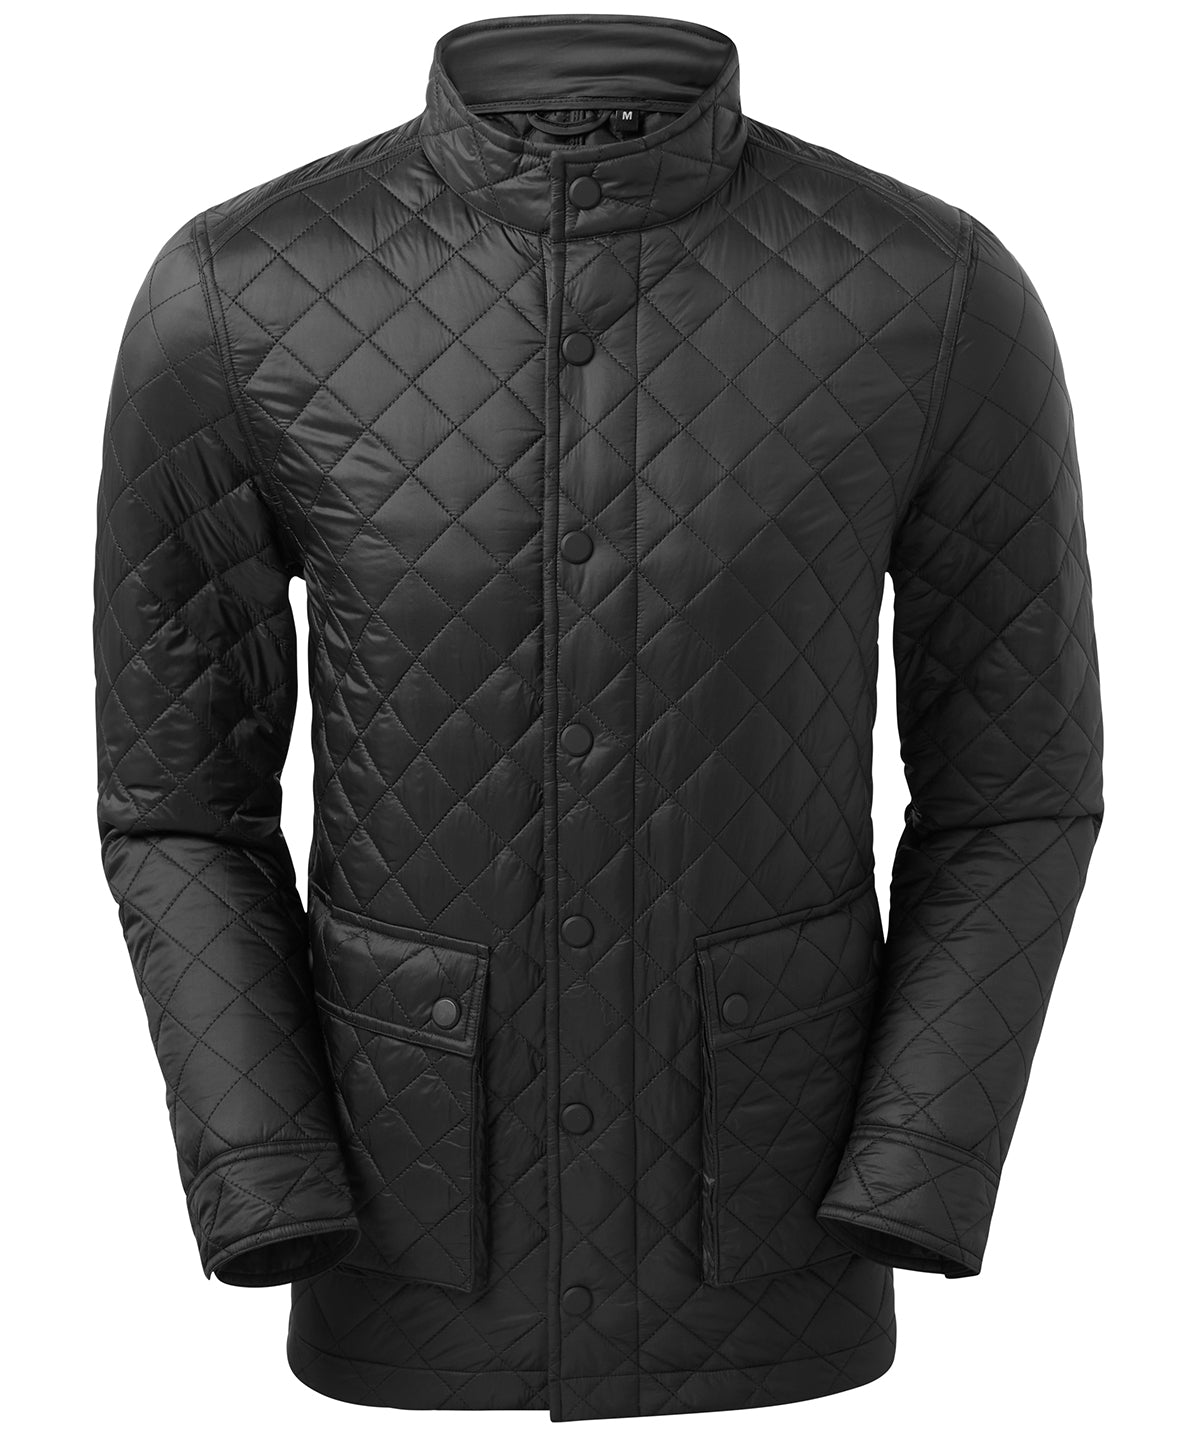 Jakkar - Quartic Quilt Jacket